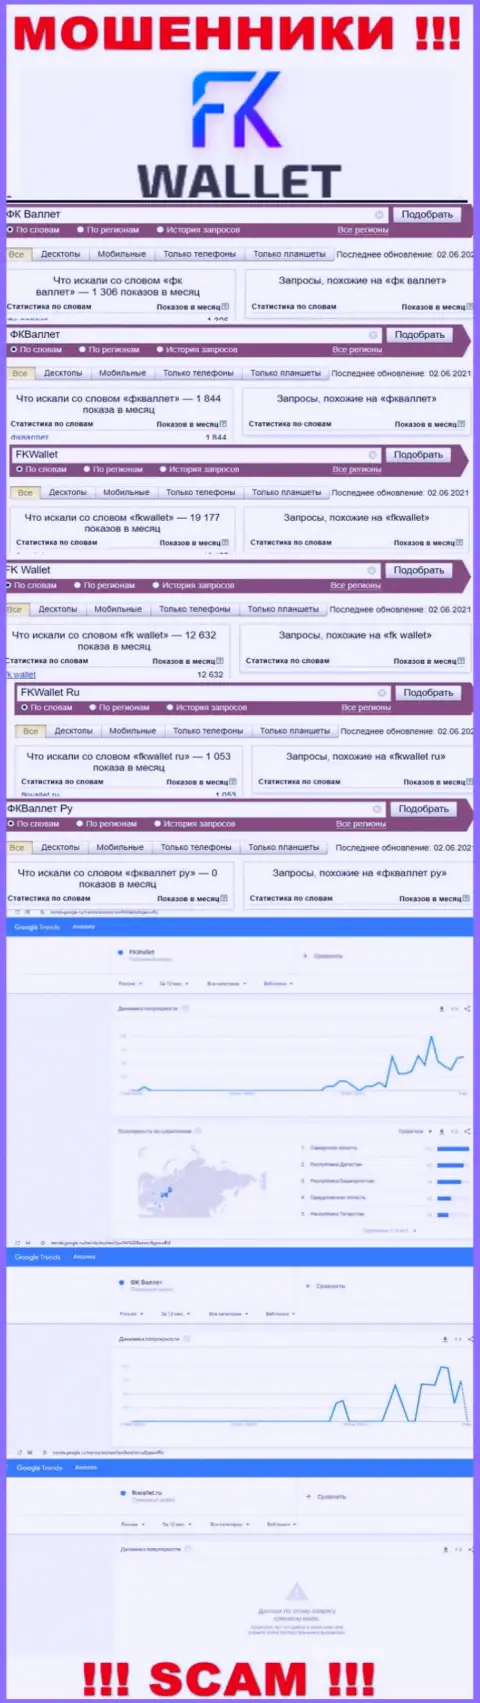 Скрин статистических показателей онлайн-запросов по противоправно действующей конторе ФК Валлет